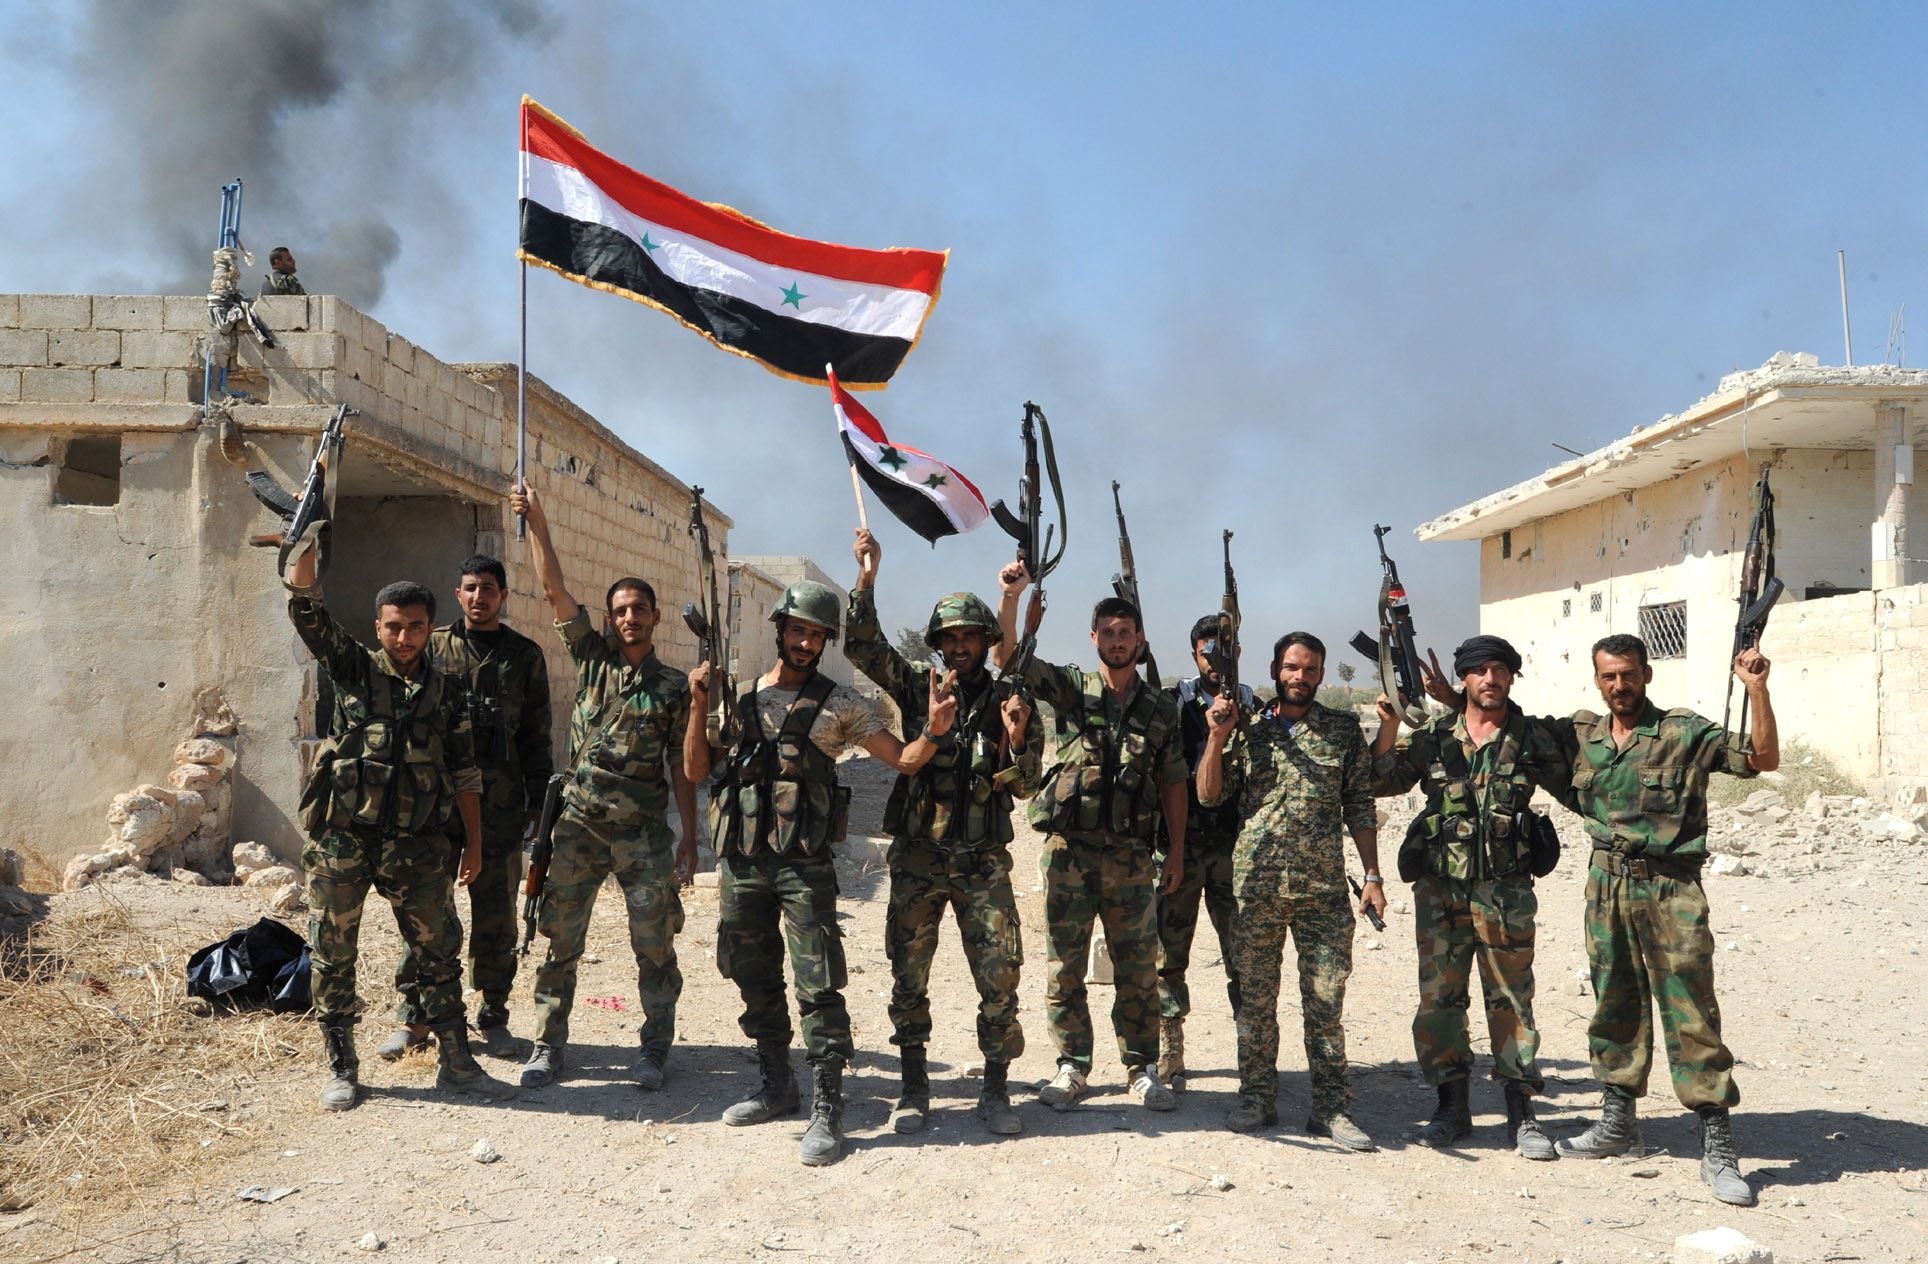 أهمية تحرير الجيش السوري للعقيربات وتقدمه في أرياف حمص وحماة ودير الزور